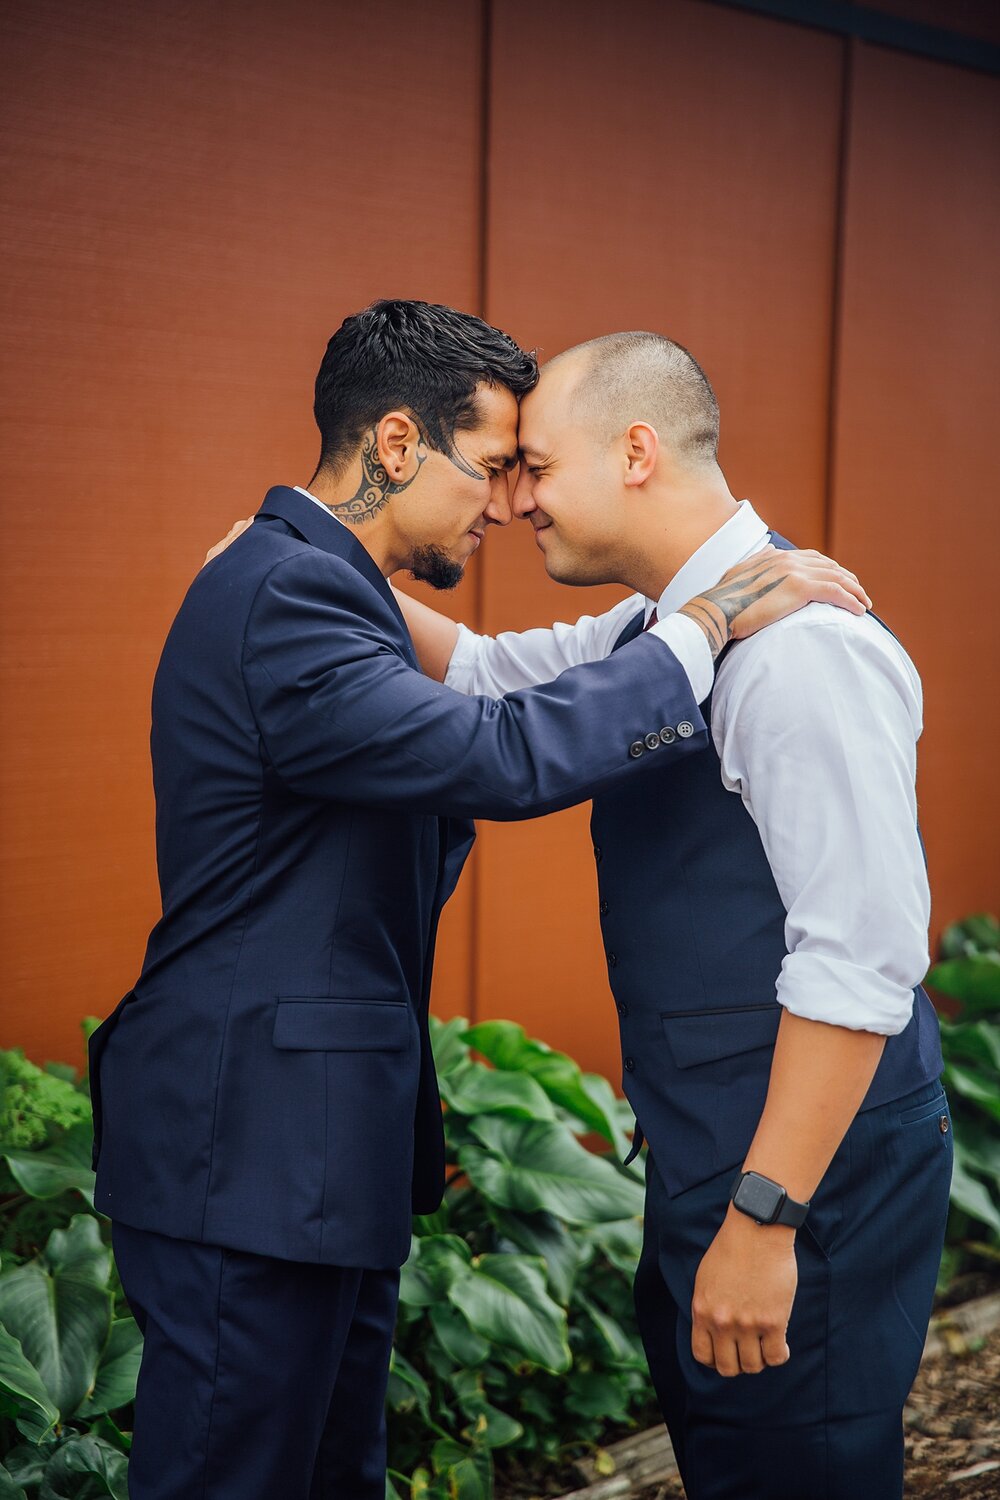 Hawaiian greeting between the groom and groomsman